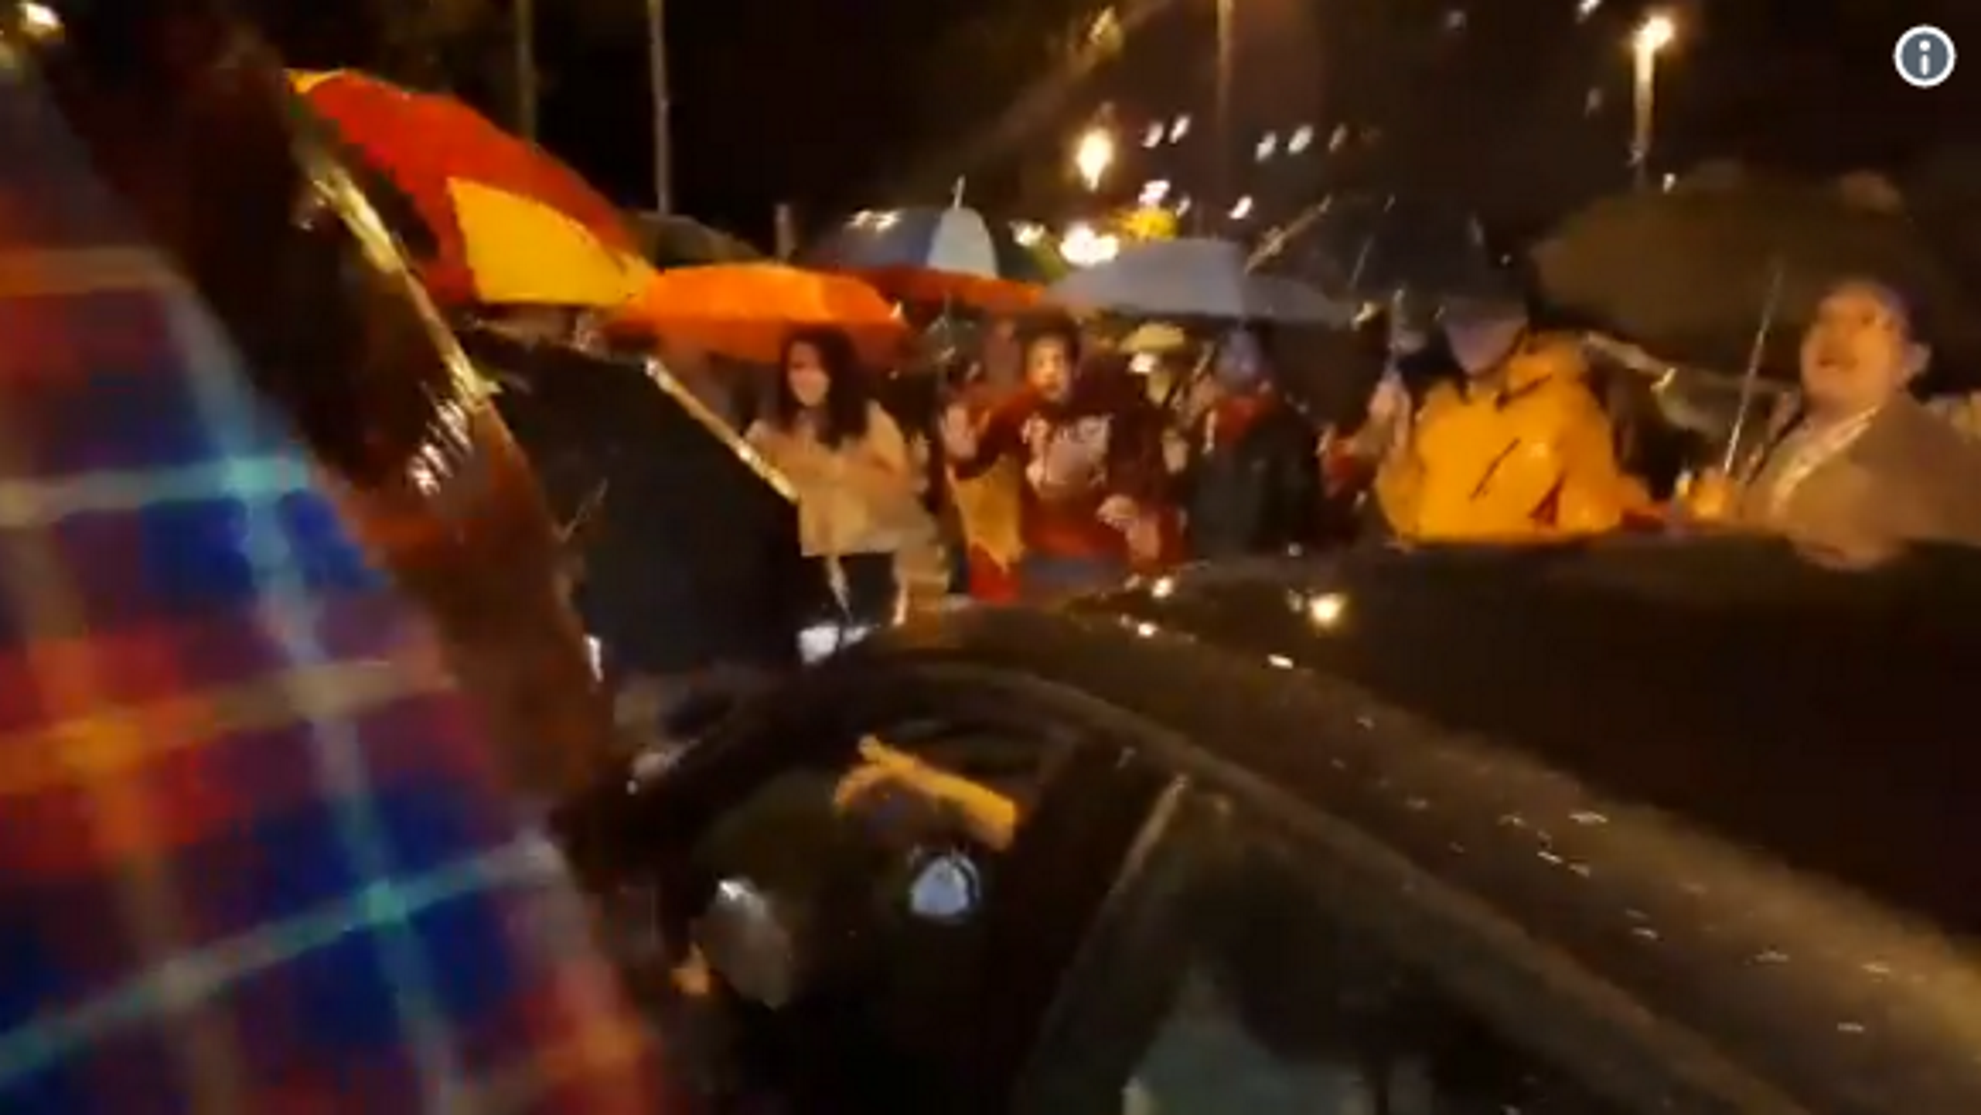 Unionistas obligan a los coches a gritar "Viva España" y agreden a una periodista de RAC1